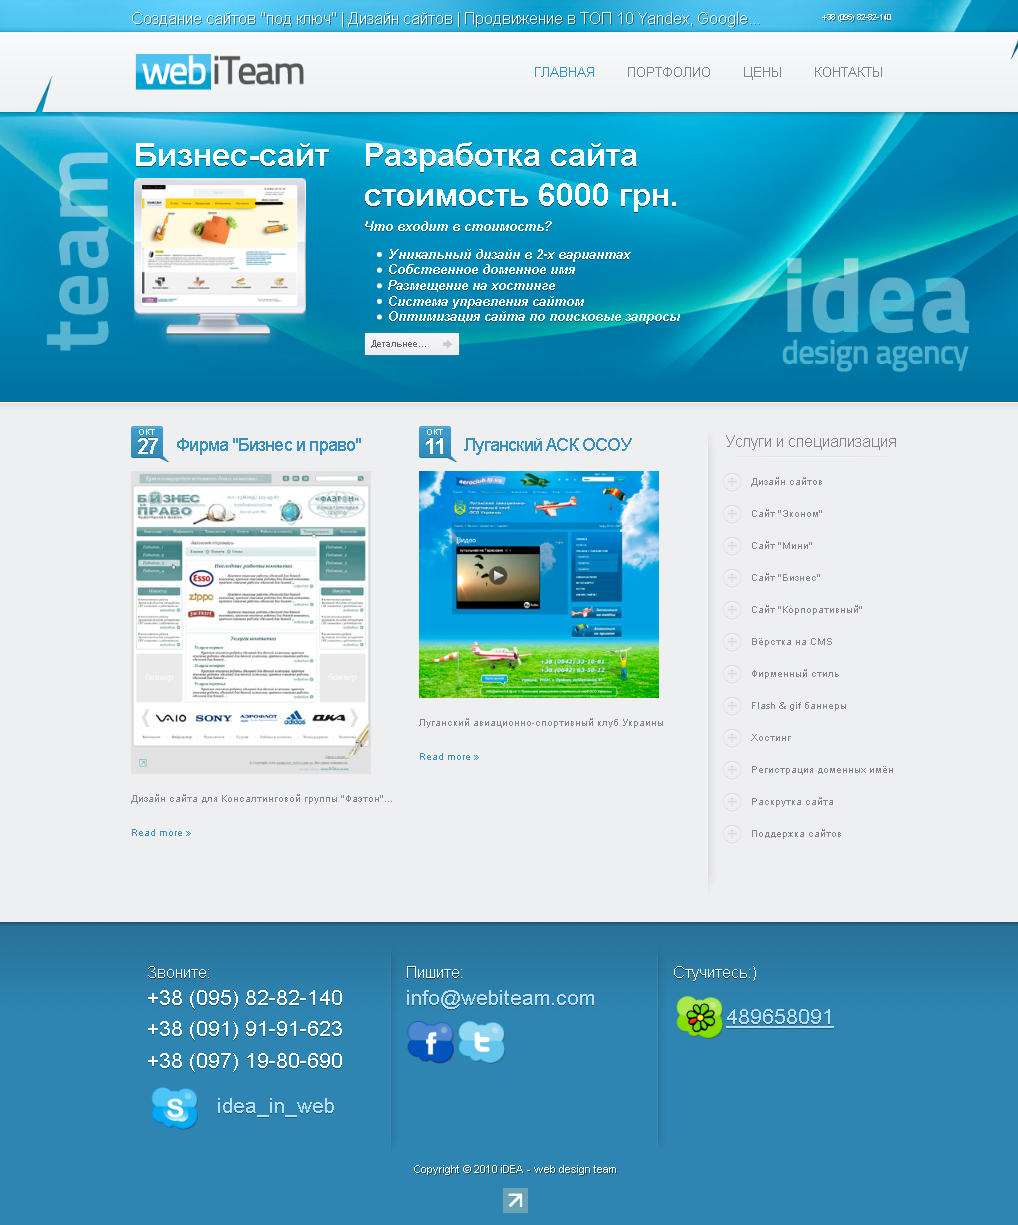 iDEA - web design team | webiteam